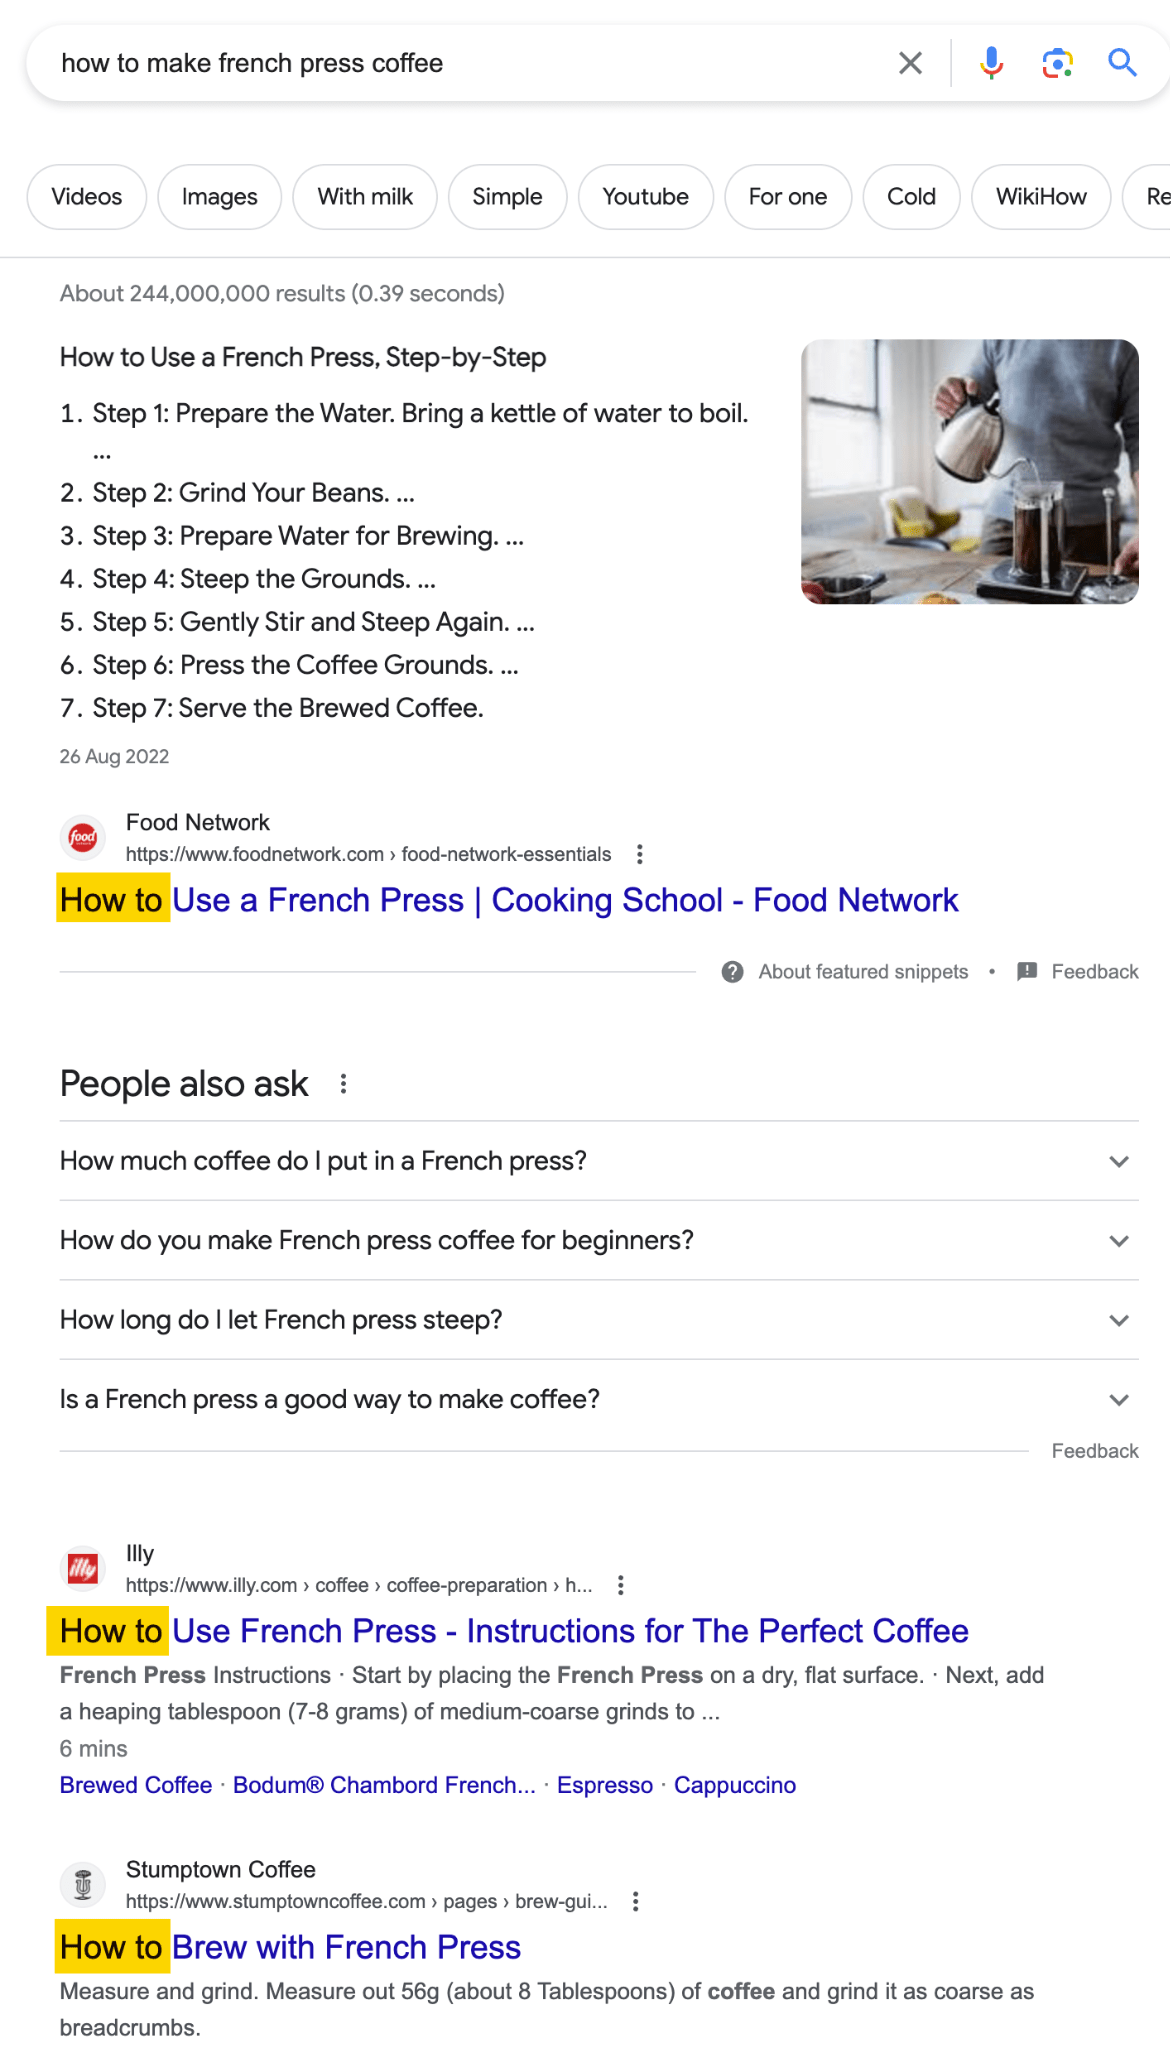 "프렌치 프레스 커피 만드는 방법"에 대한 Google 검색 결과는 검색자들이 방법 가이드를 원한다는 것을 보여줍니다.